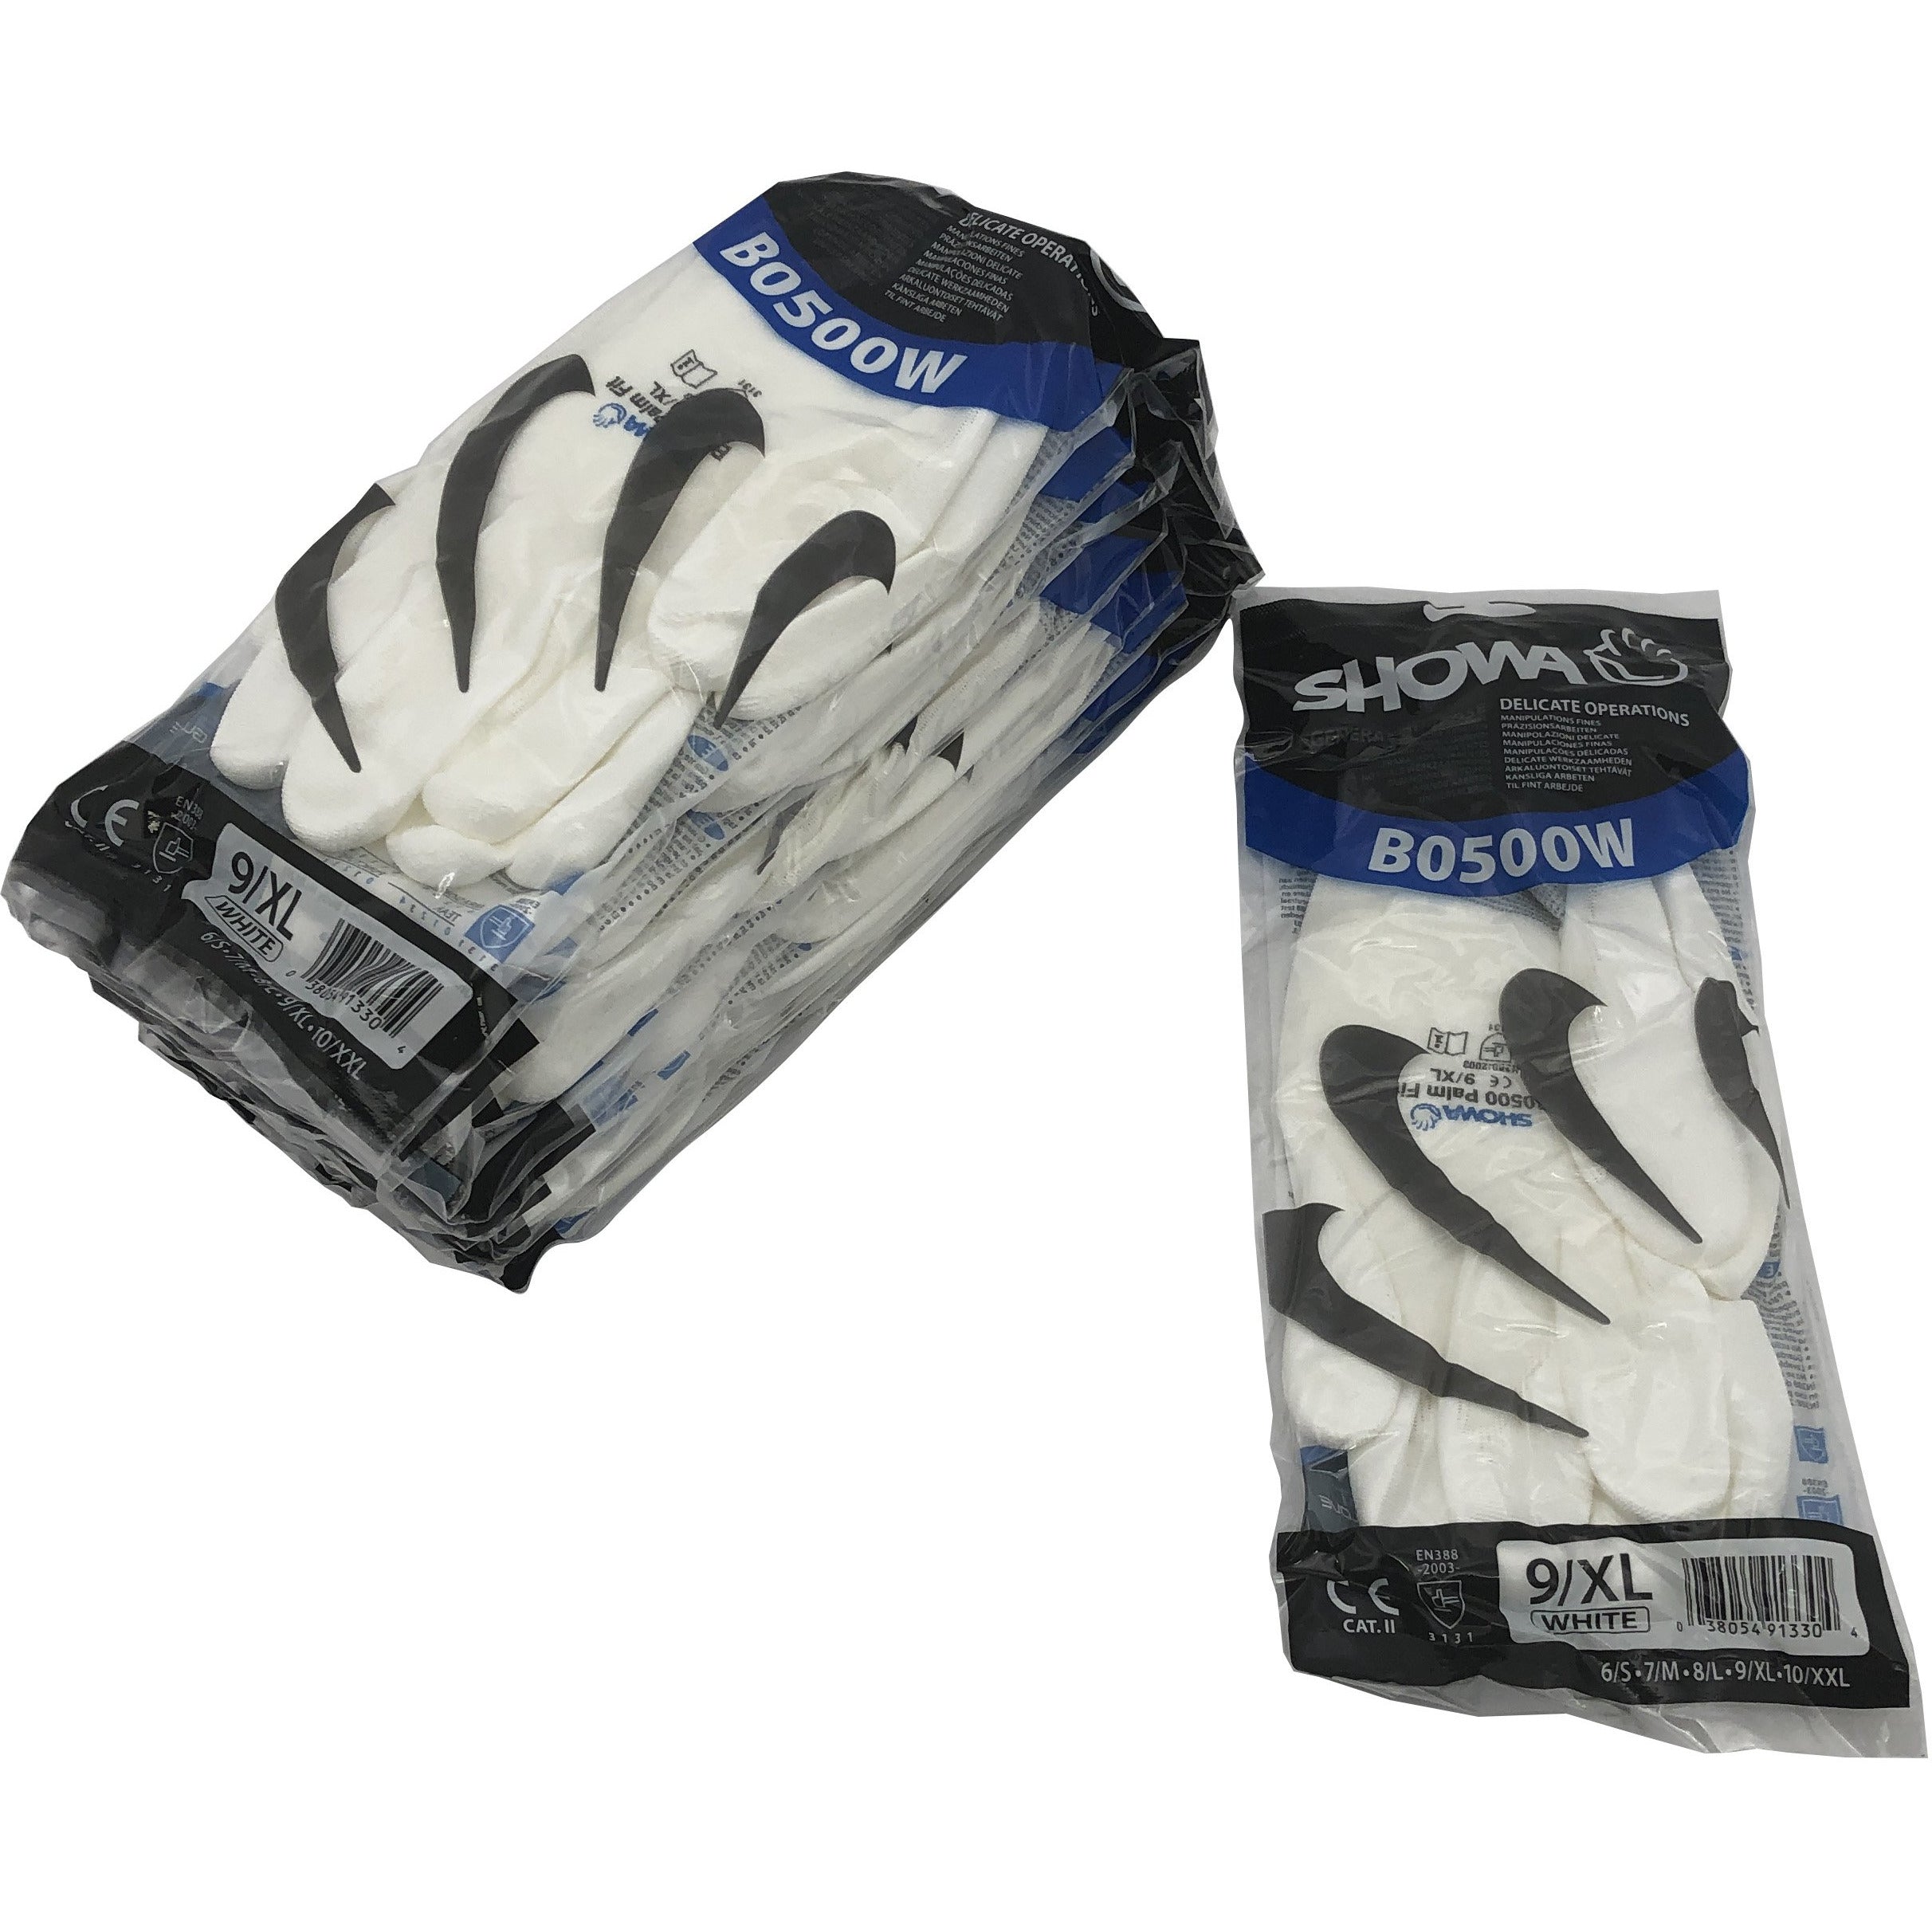 Showa XL Gloves